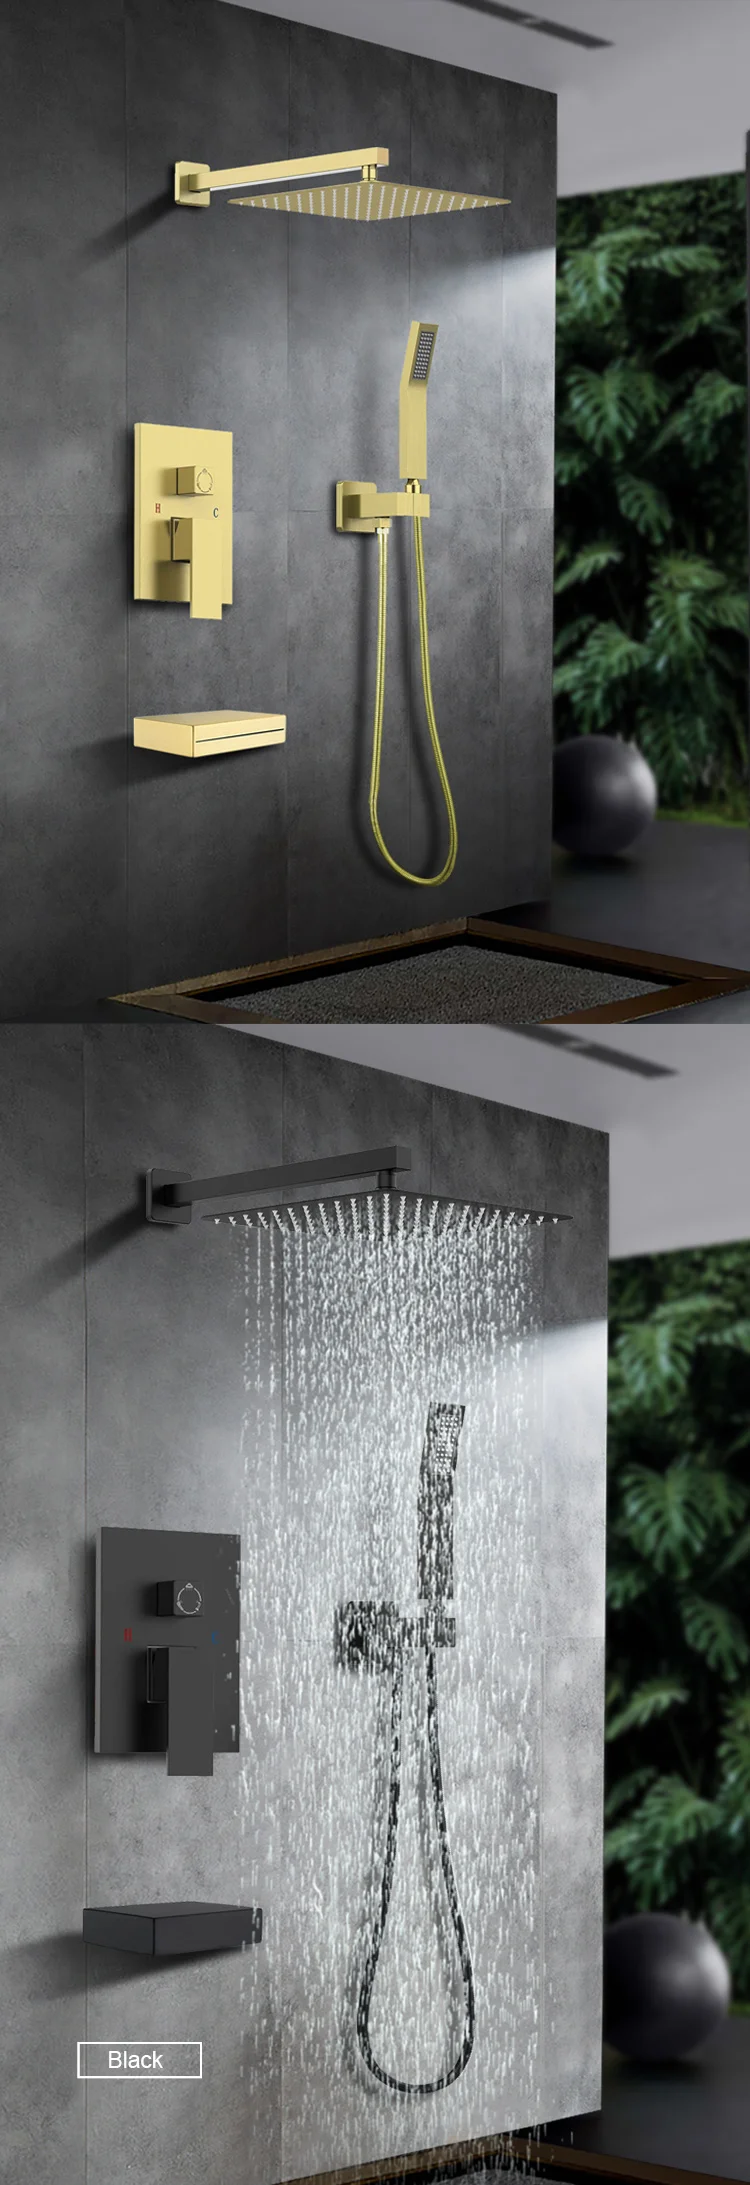 shower set in wall mounted brass tap Bathroom taps luxury brass kits rain rainfall showerset mixer faucet set rainshower